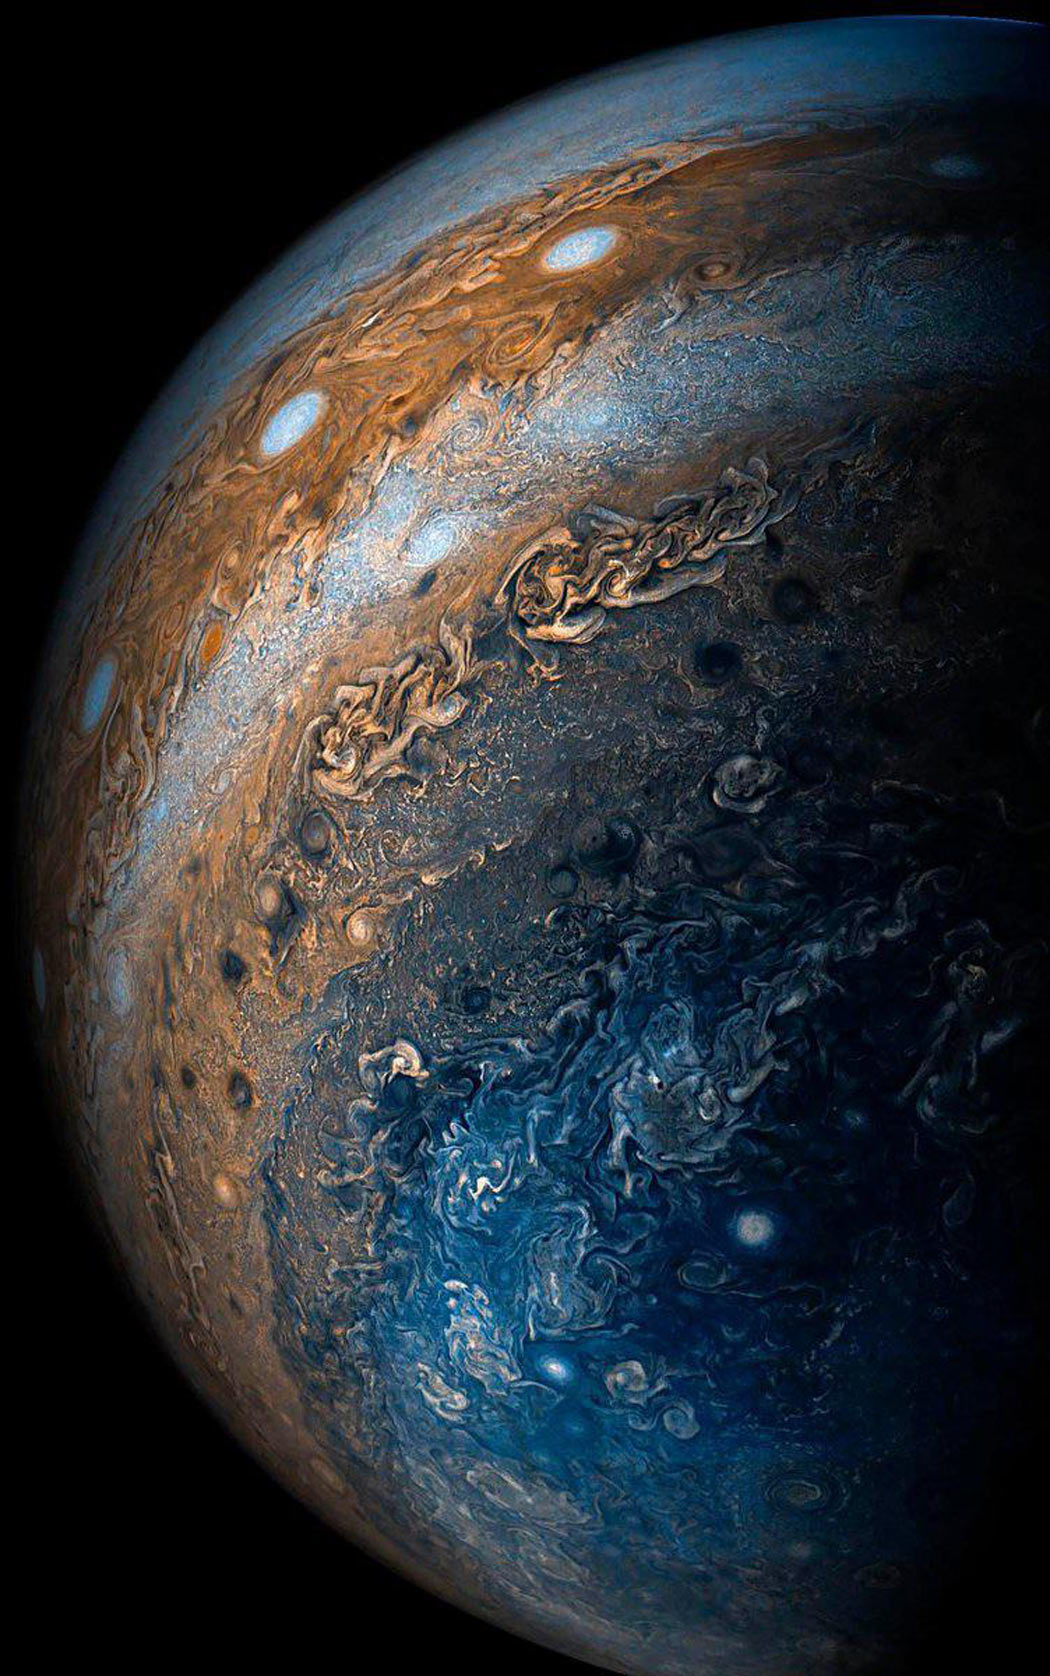 Jupiter's Bands of Clouds